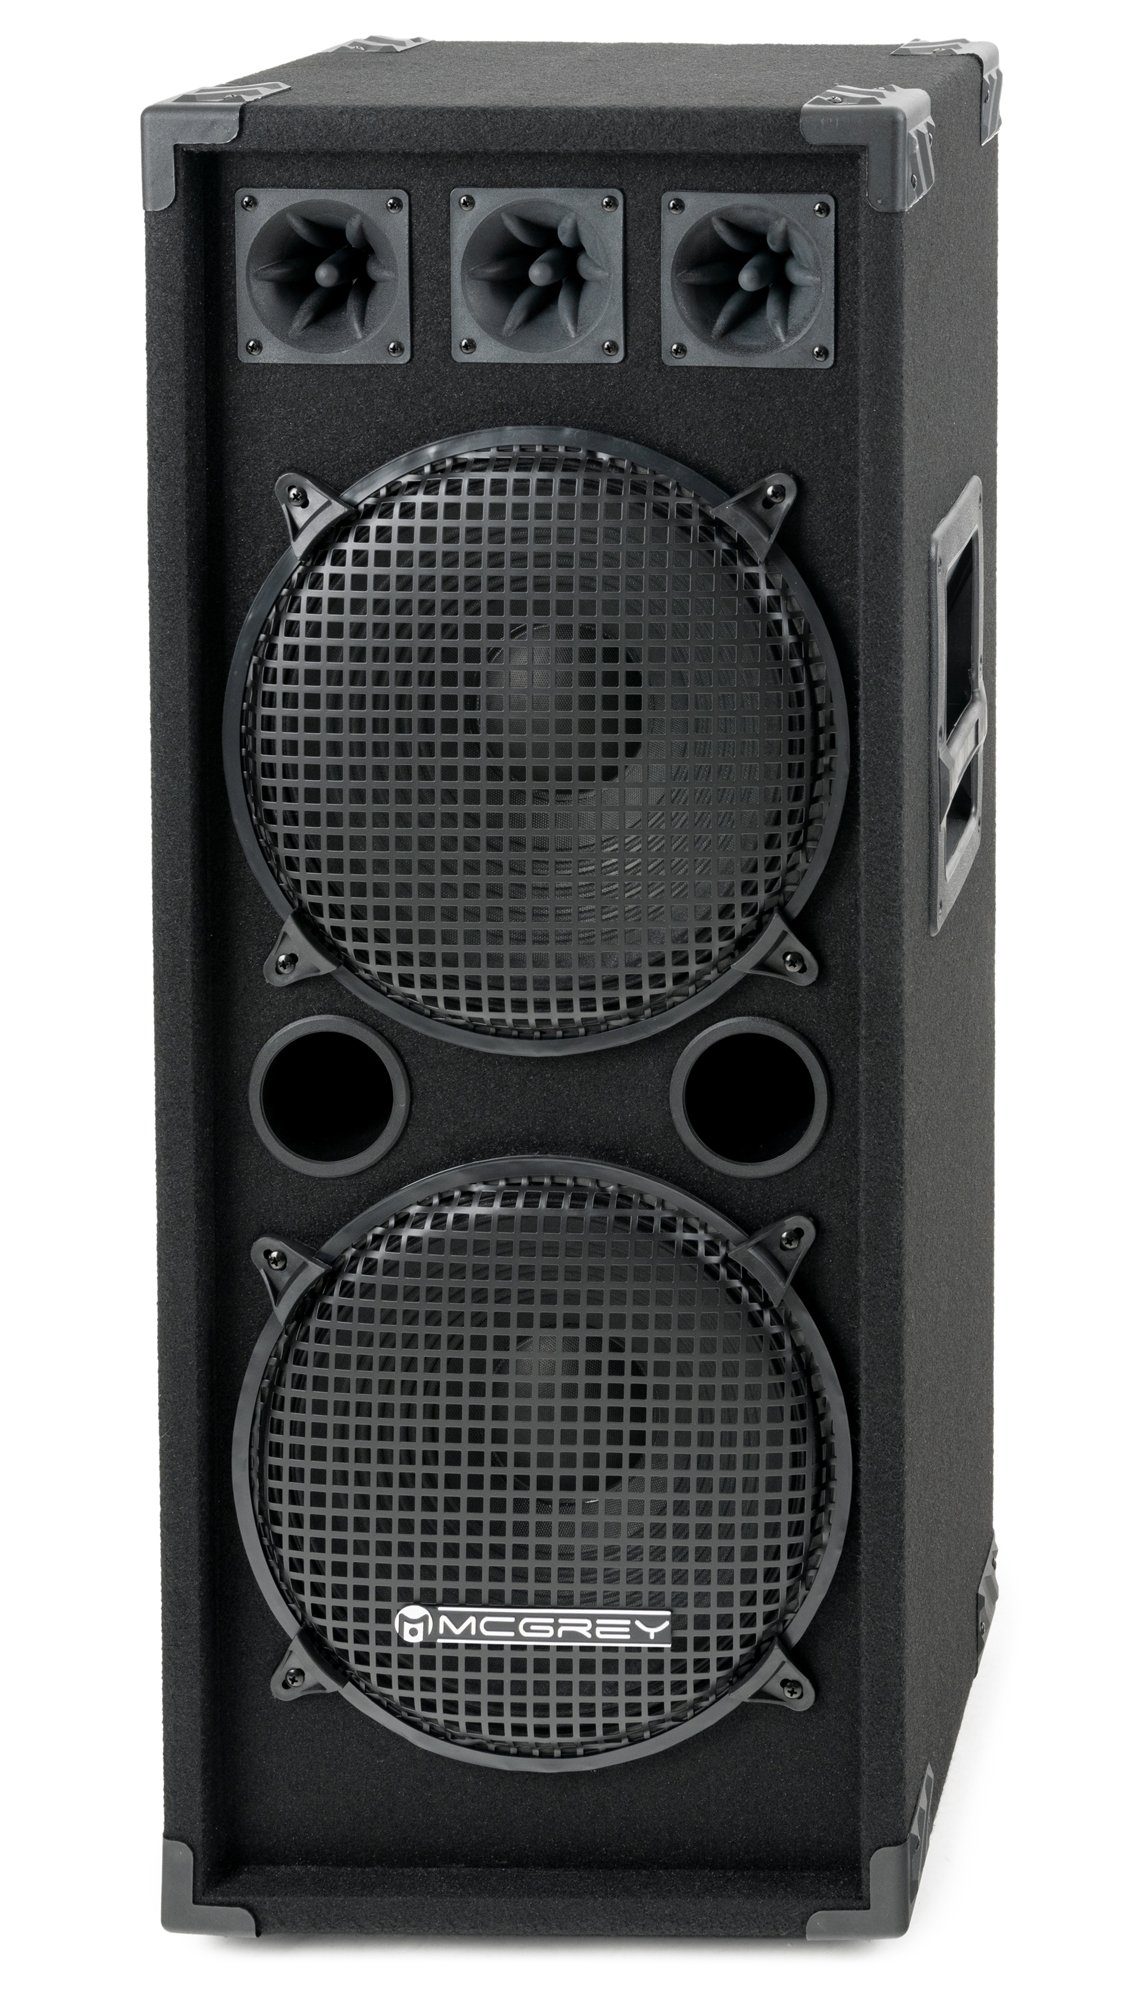 McGrey DJ-2222 2-Etagen DJ PA Box Tower Party-Lautsprecher (N/A, 500 W, 2-Wege System mit 2x 30cm (12 zoll) Subwoofer und 4x Piezo-Hochtönern) | Lautsprecher